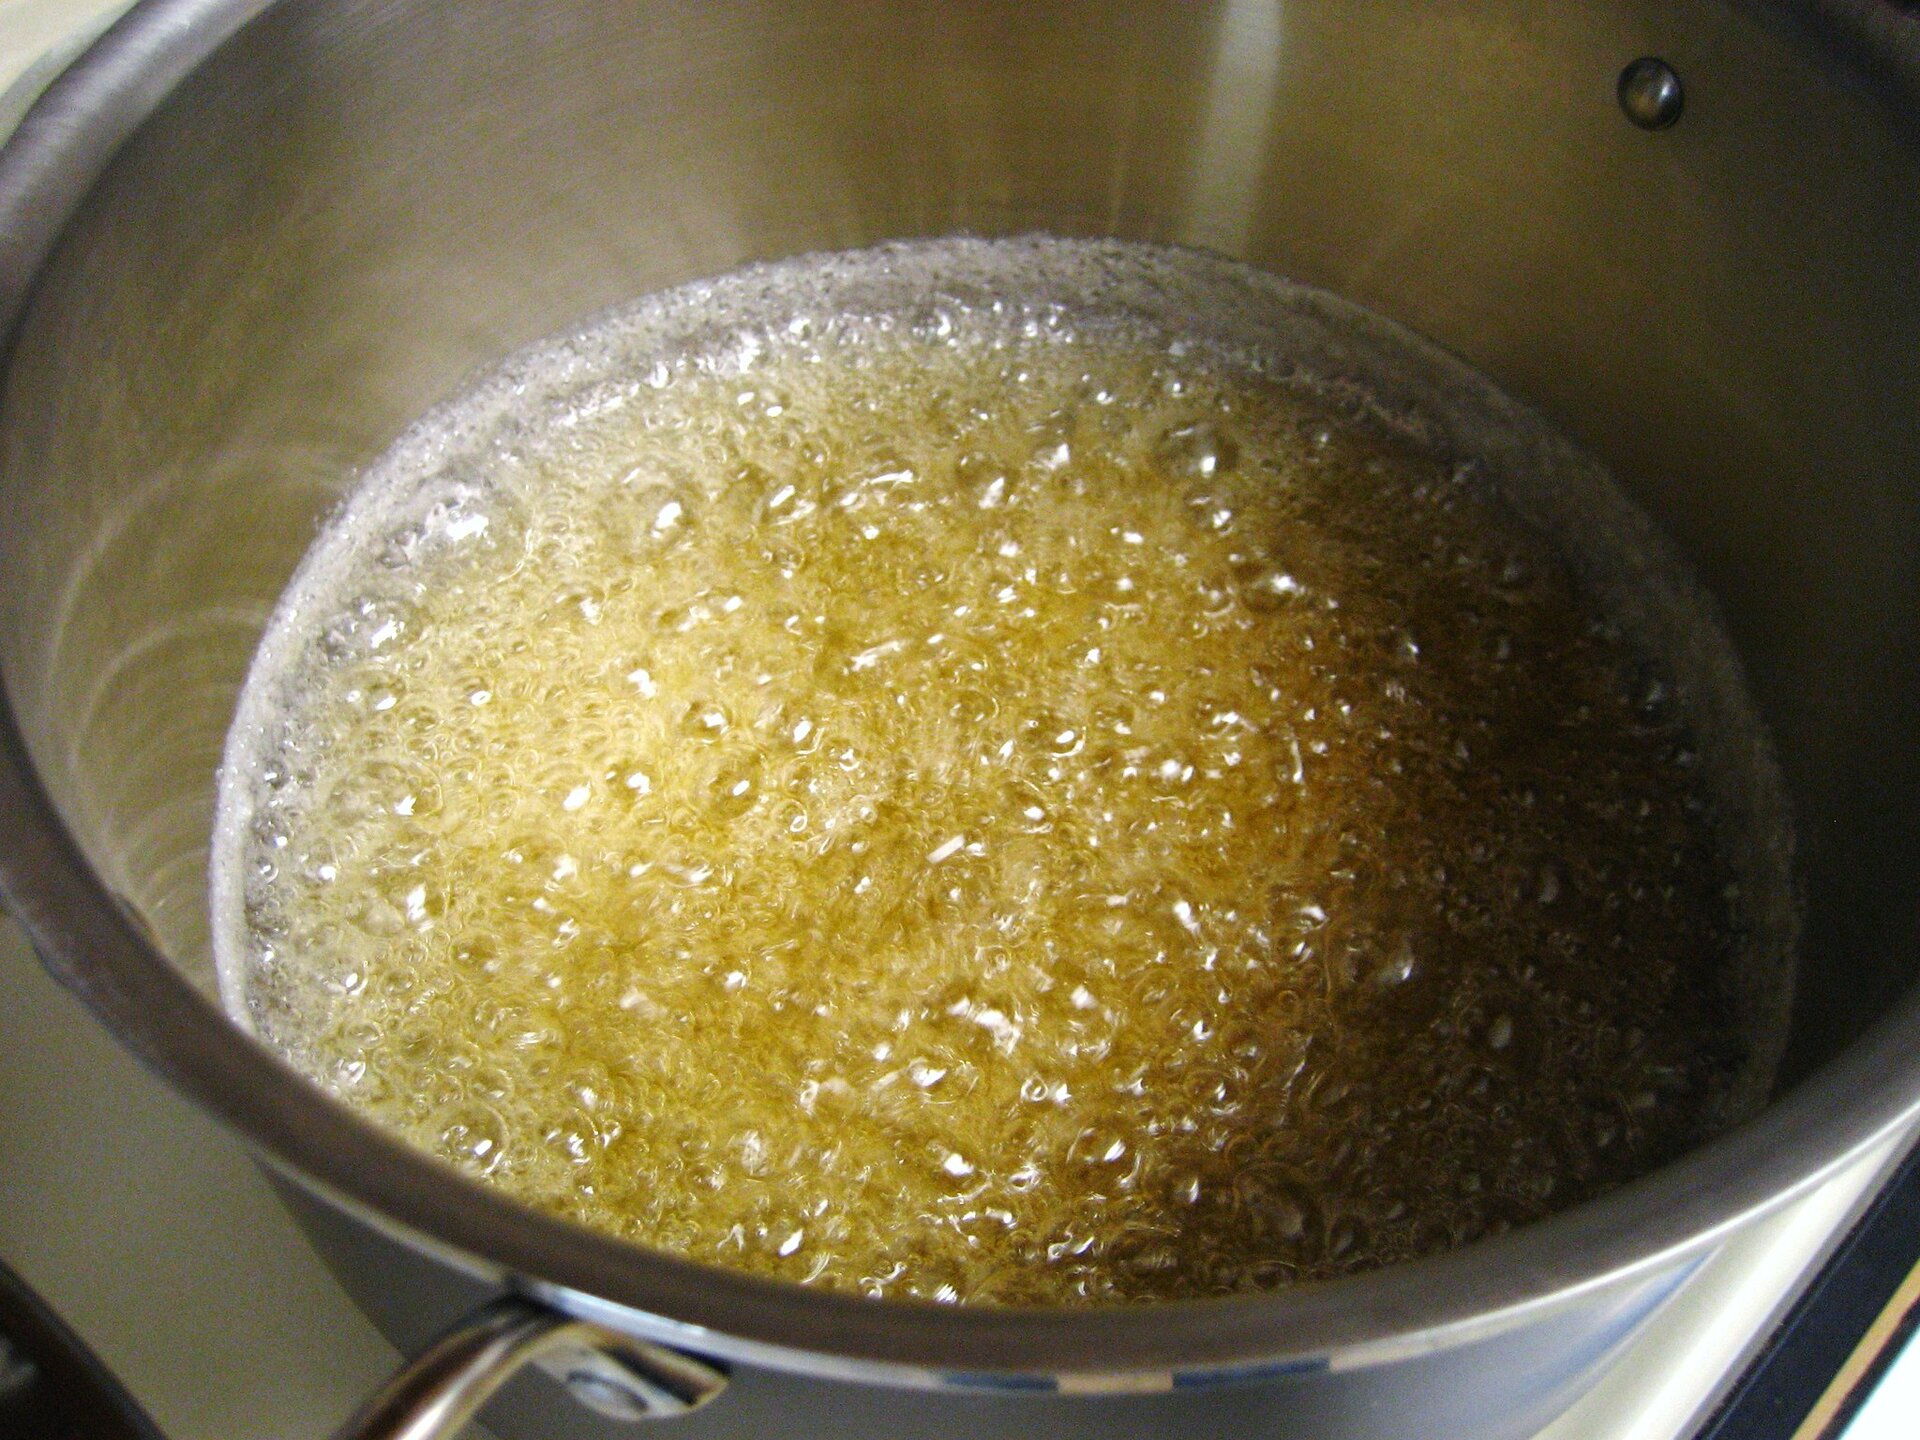 Na fotografii zaprezentowano patelnię, na której, pod wpływem temperatury, cukier zmienia swój stan skupienia ze stałego w ciekły (karmel). Żółtobrązowa, bulgocząca, gęsta ciecz.